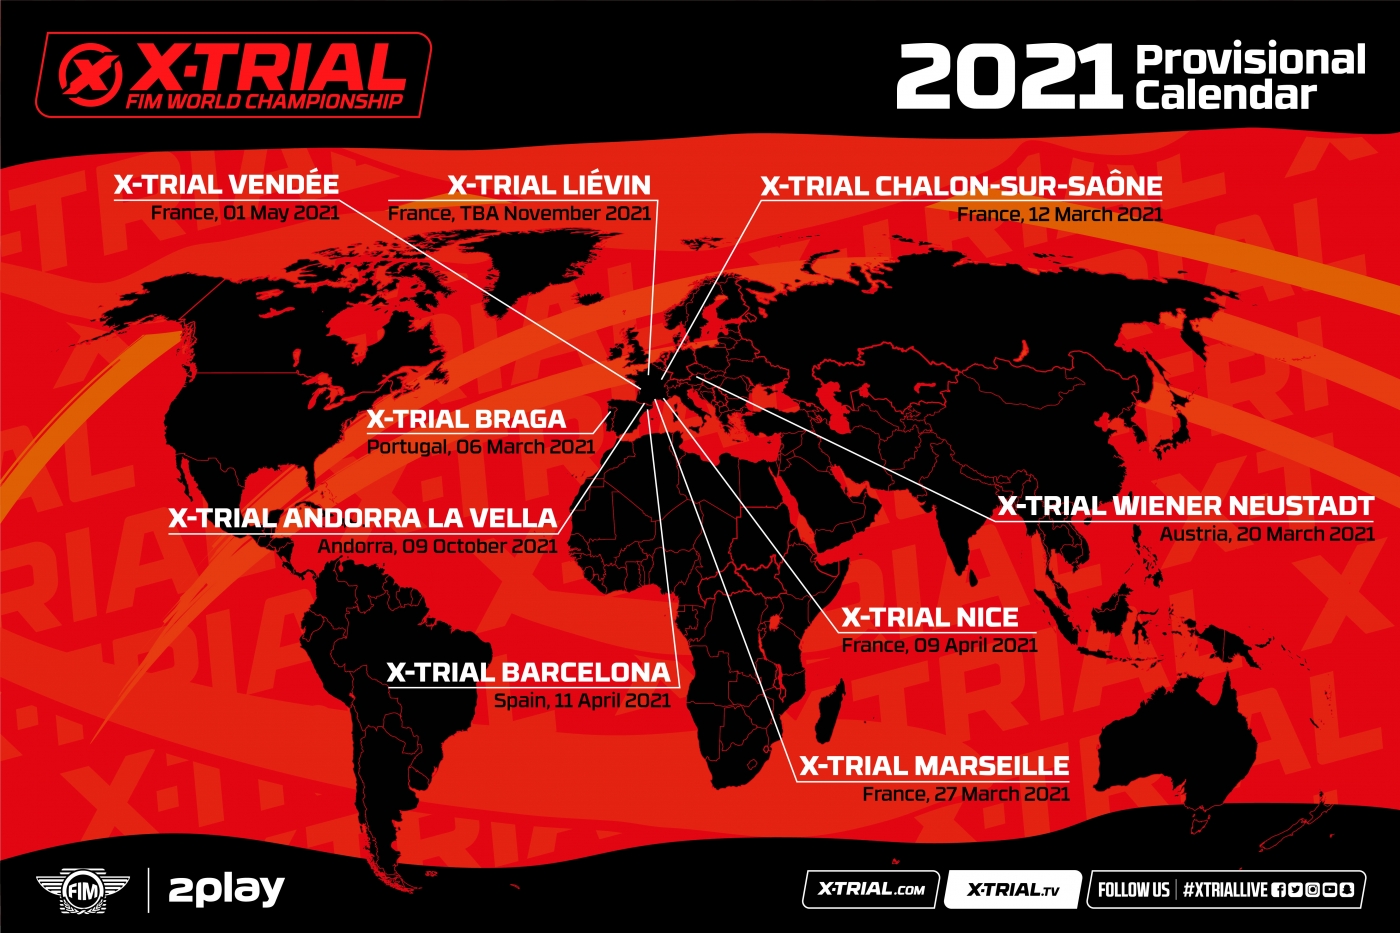 Provisional 2021 X-Trial calendar revealed